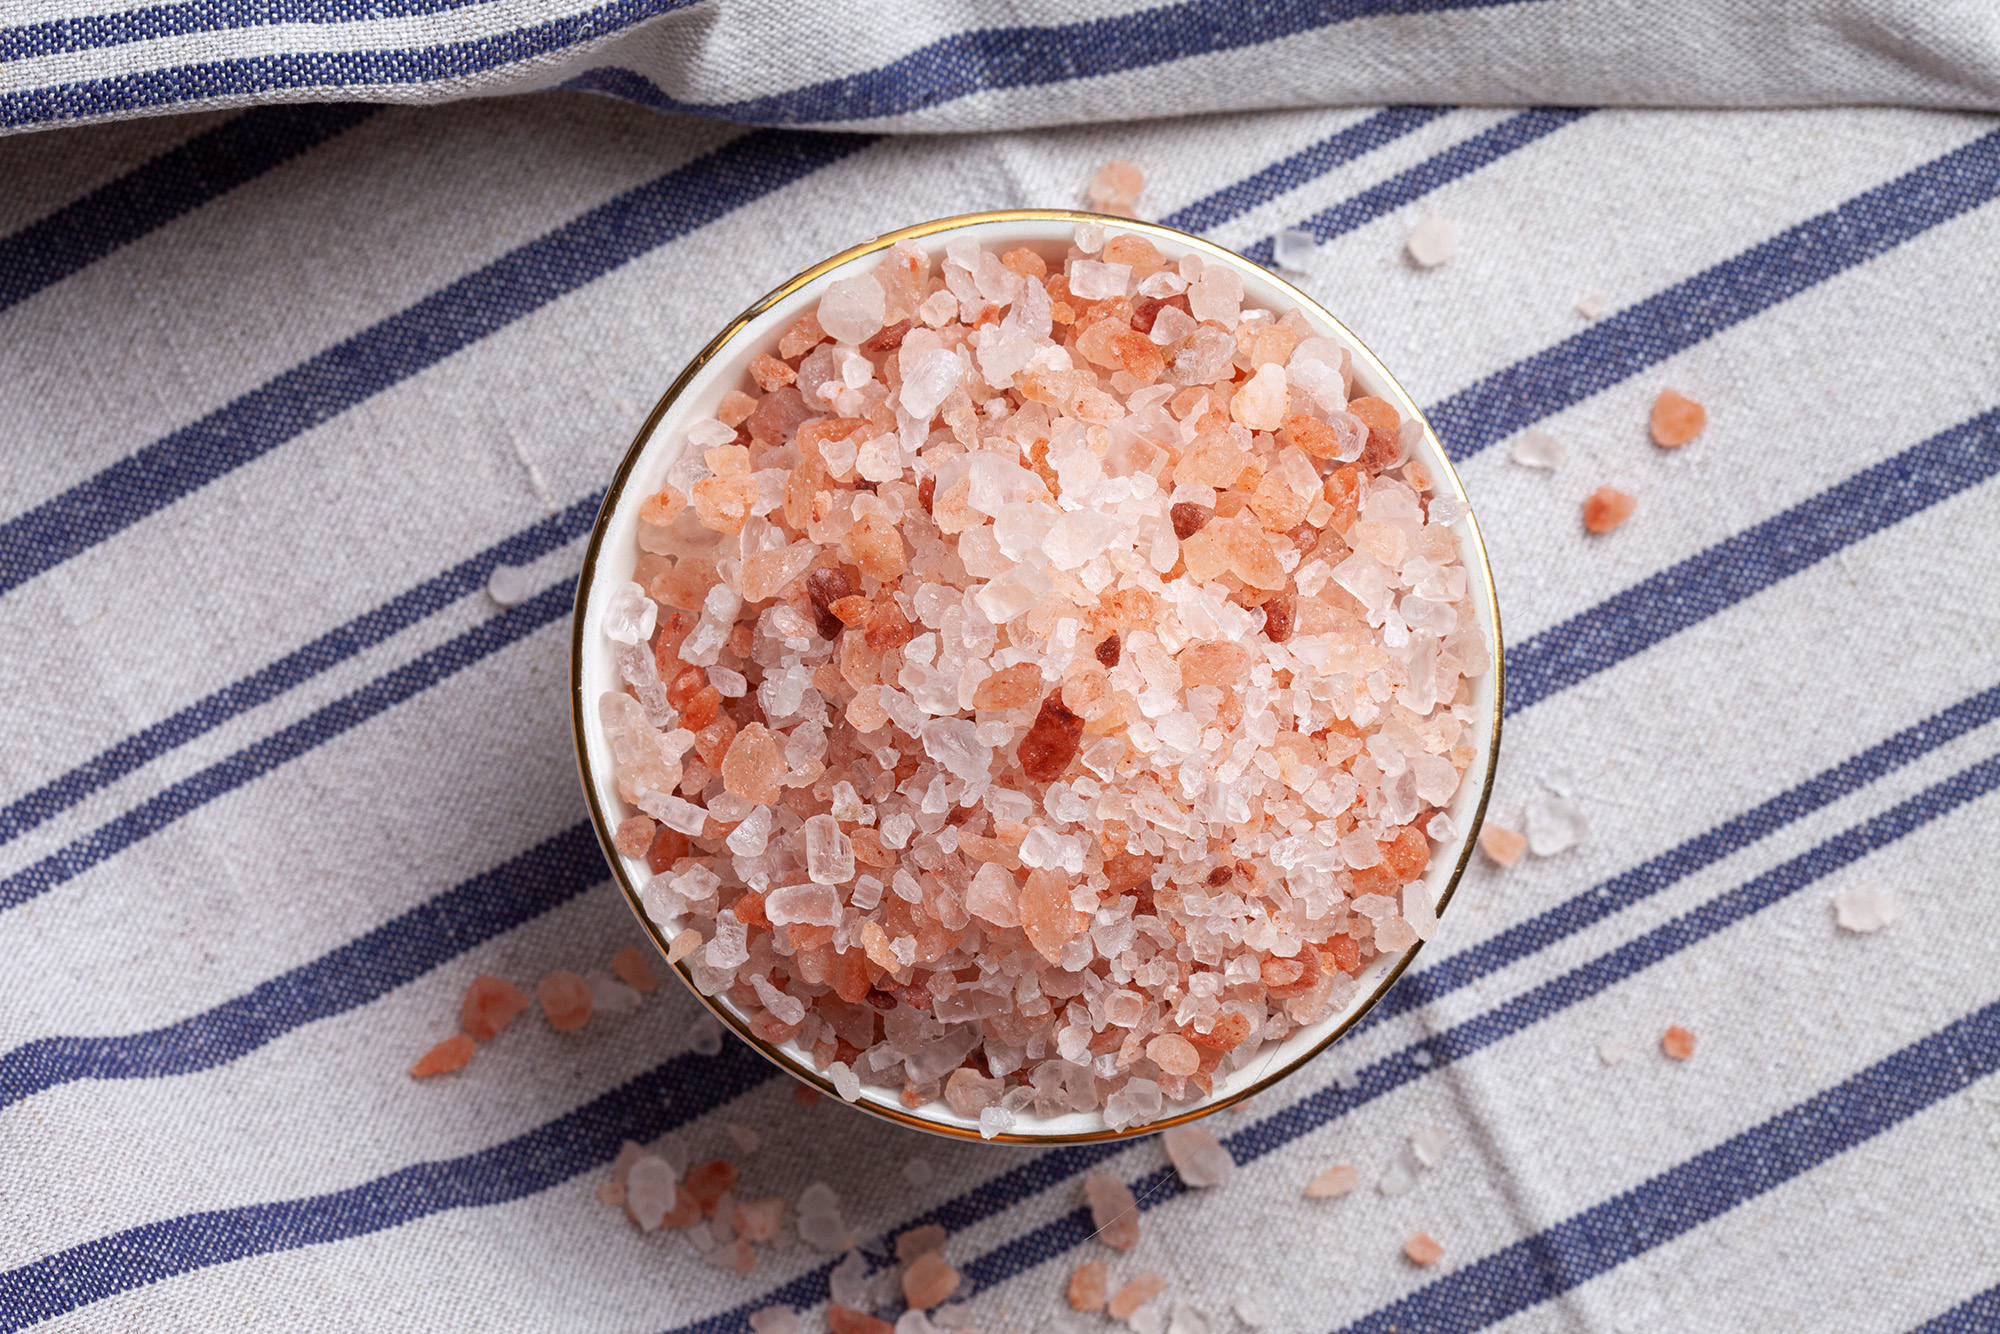 В магазинах обычно продается более мелкая гималайская соль. Упаковка весом 500 г обойдется в 110 ₽. Фото: OKcamera / Shutterstock